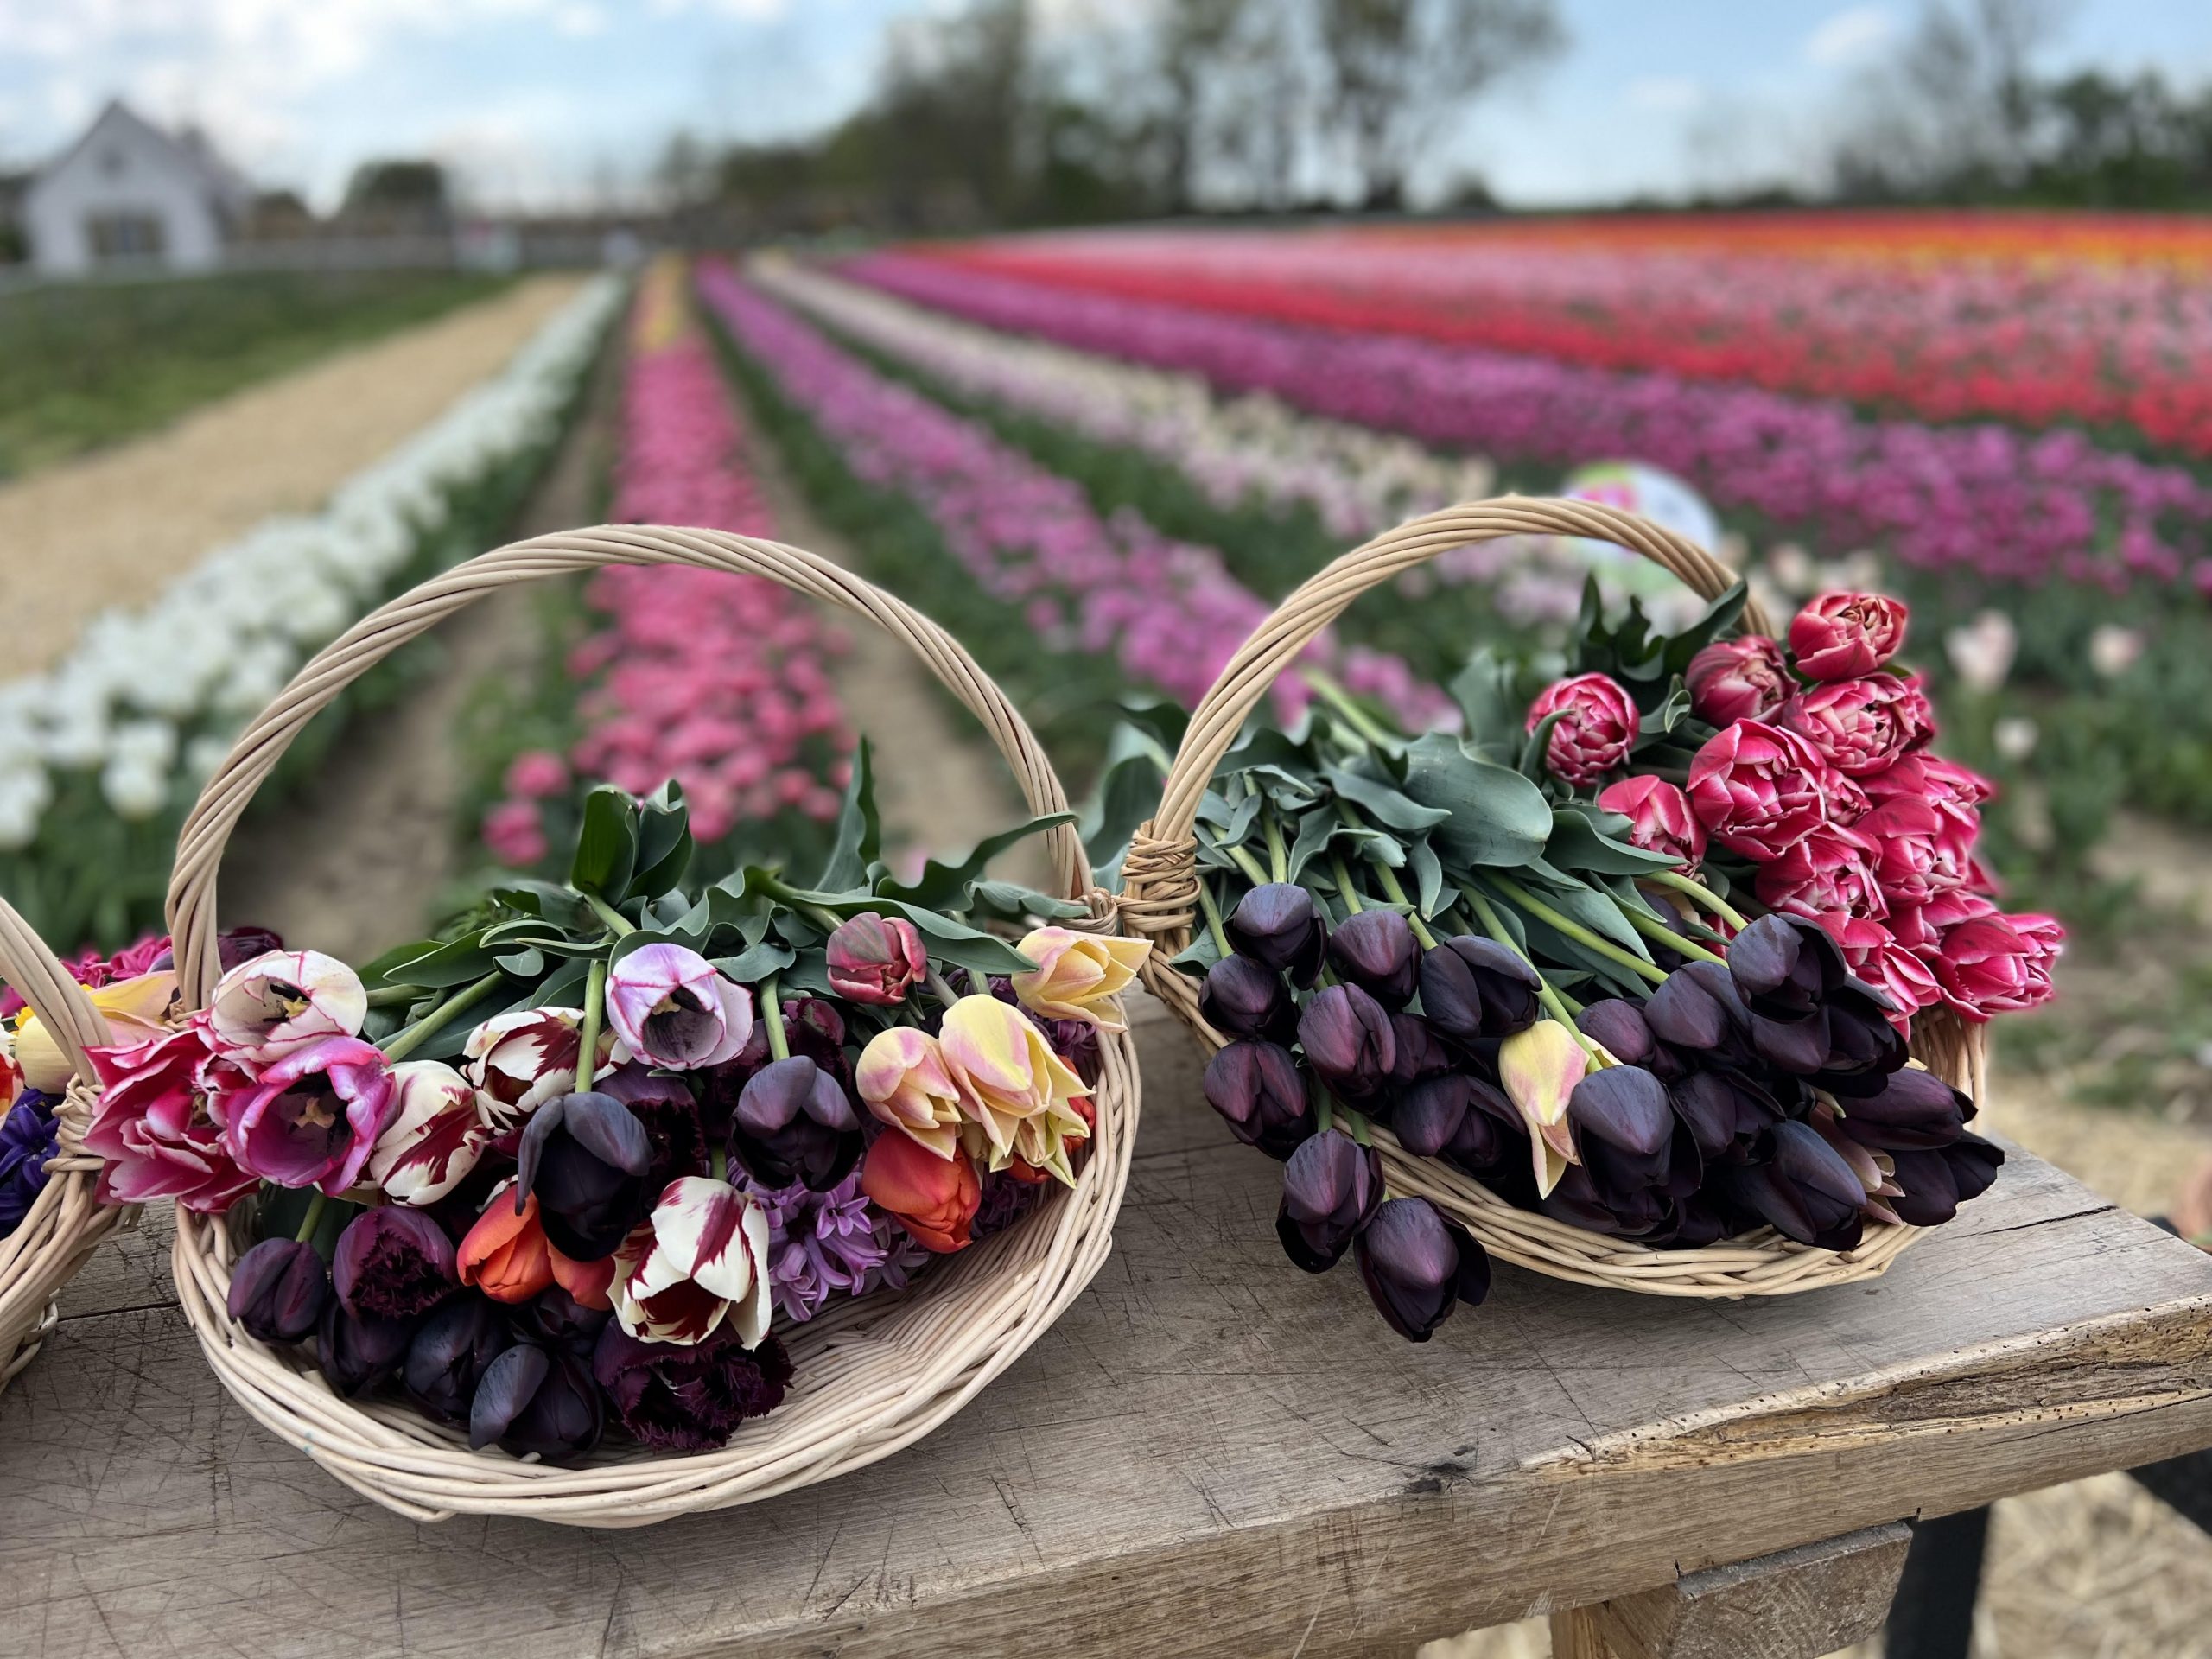 Színpompás tavaszi tulipánszüretre indulhatunk áprilisban az ország 13 pontján